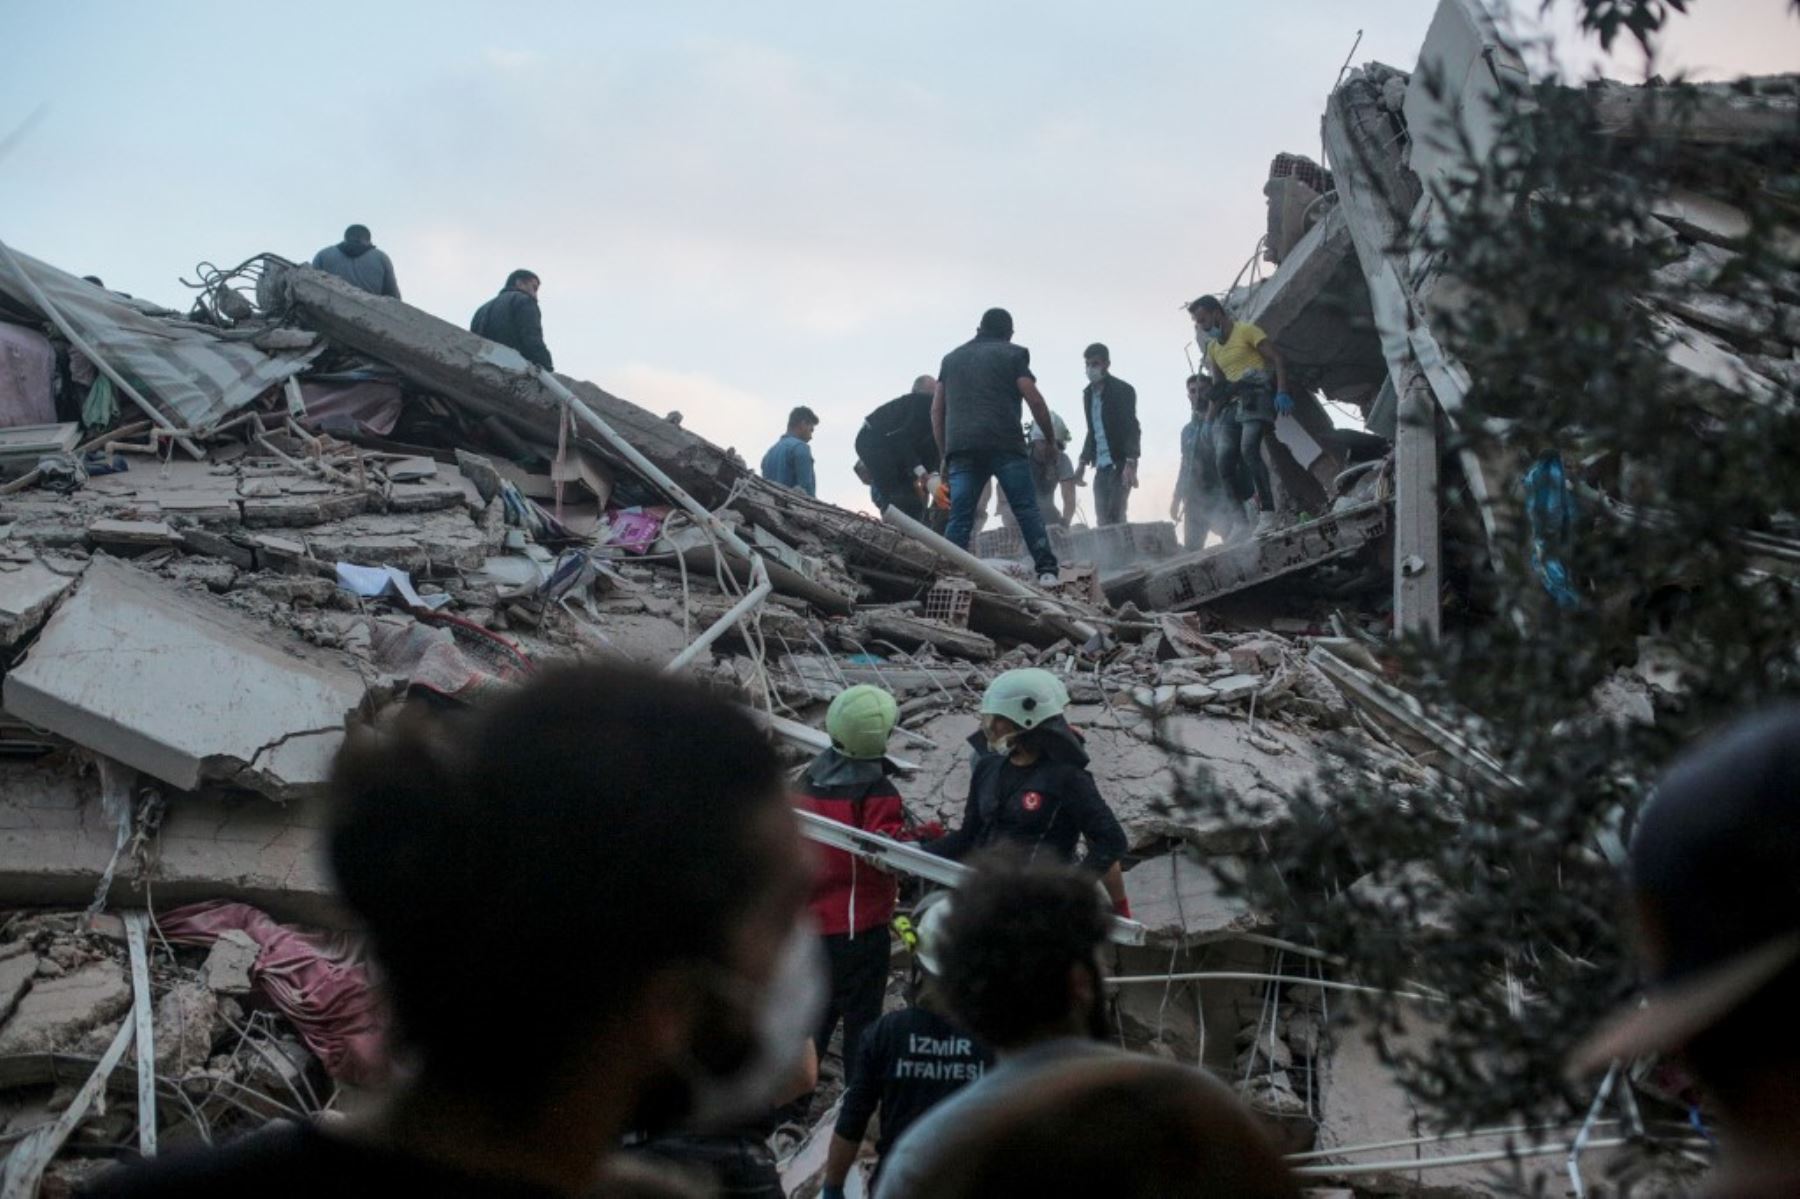 Los voluntarios limpian los escombros mientras buscan sobrevivientes en un edificio derrumbado después de que un fuerte terremoto sacudió la costa occidental del país y partes de Grecia, matando a cuatro personas e hiriendo a 120, en Izmir. Foto: AFP